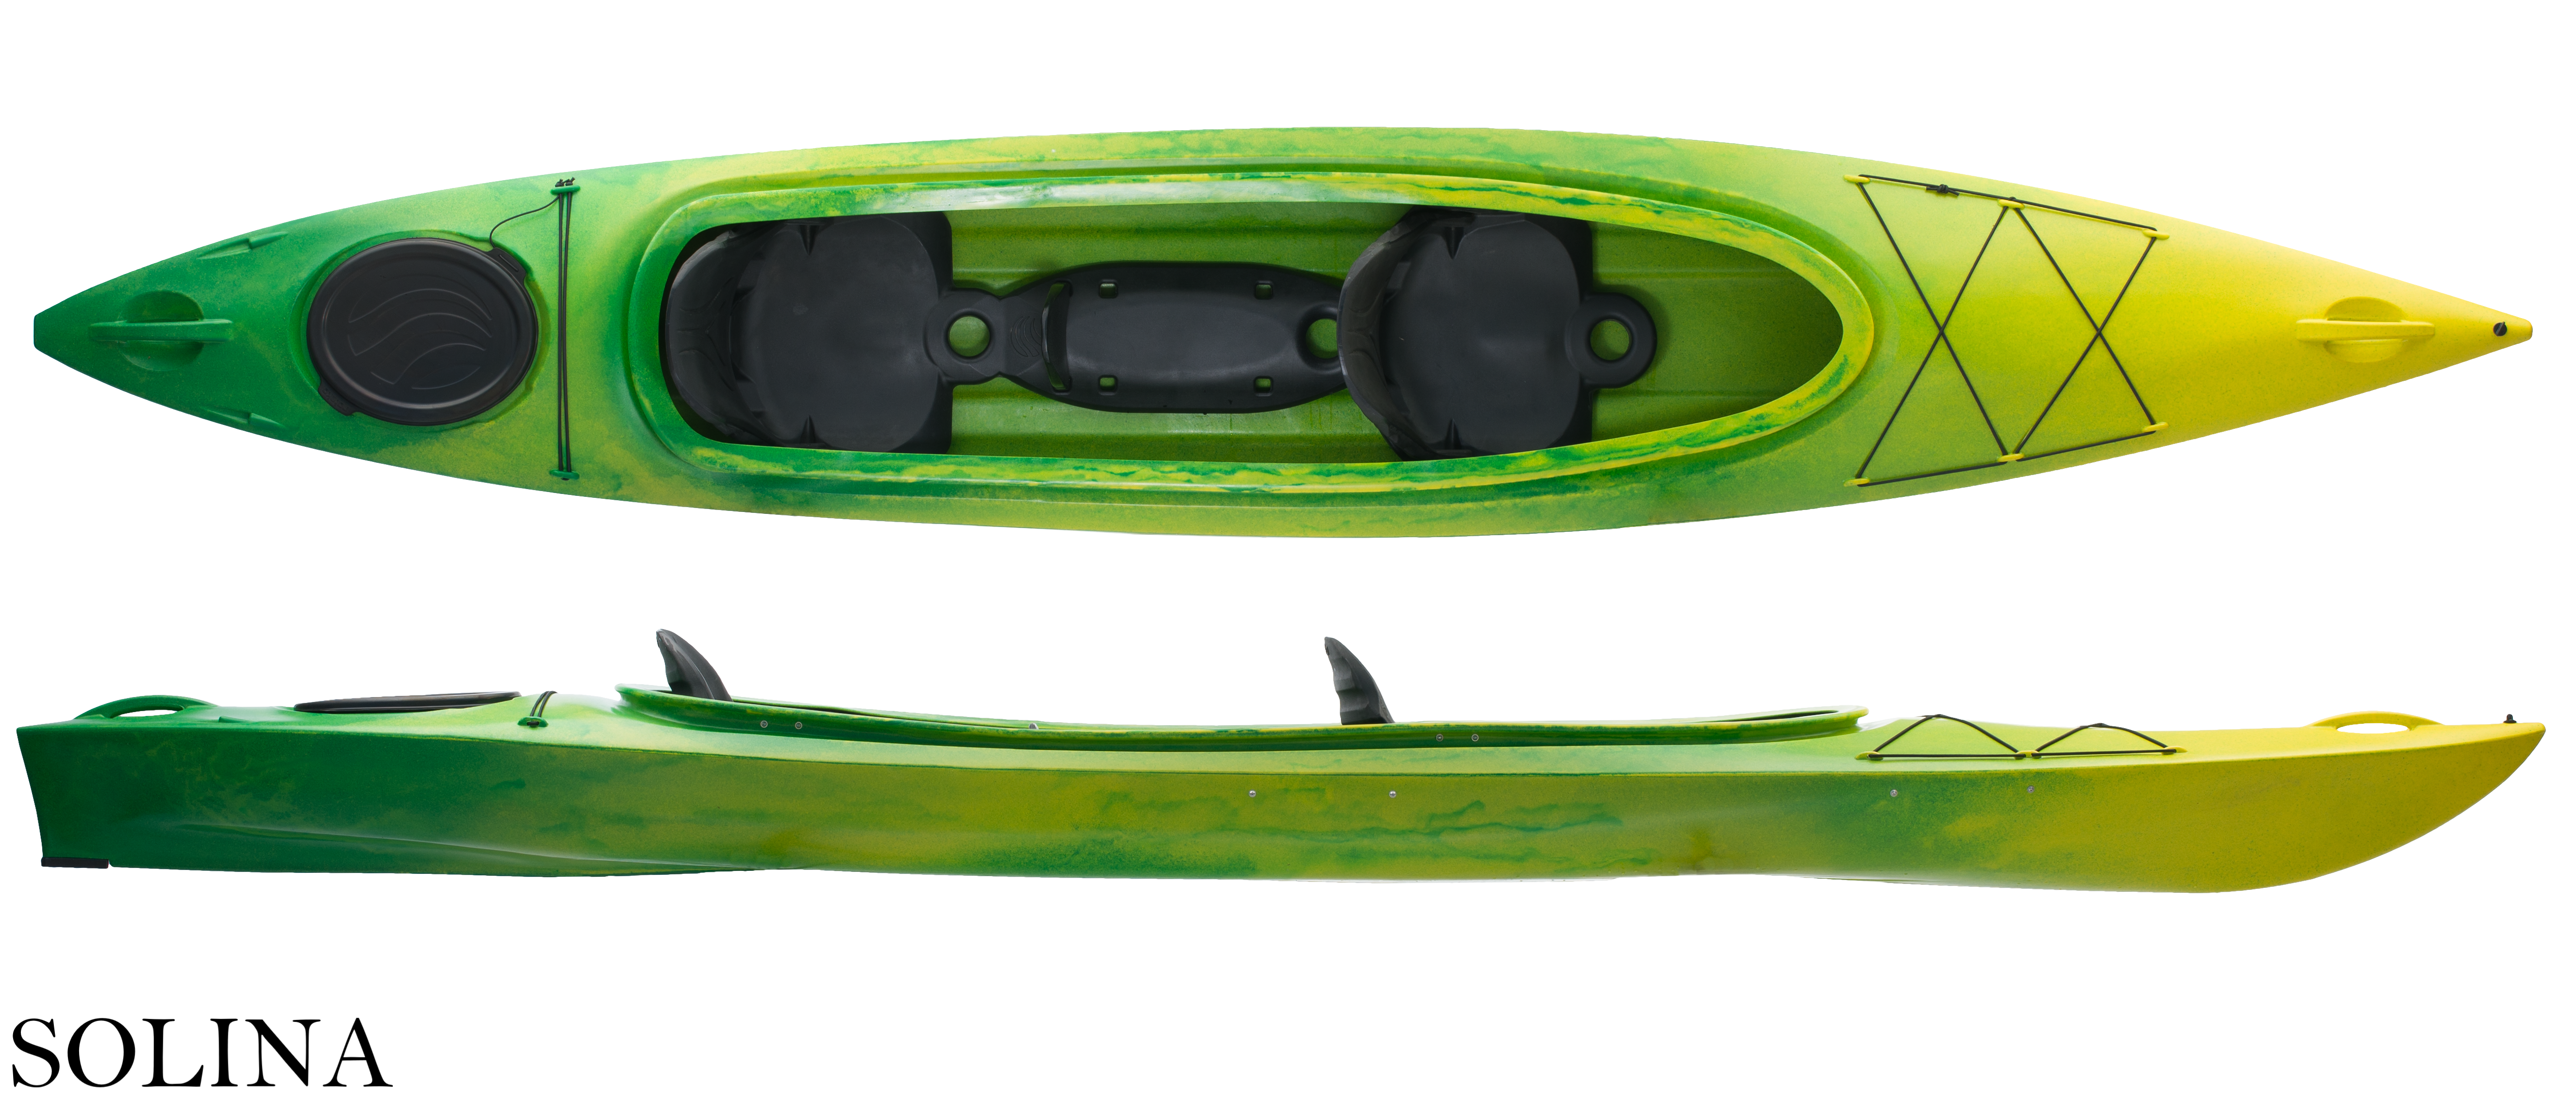 Double kayak Solina